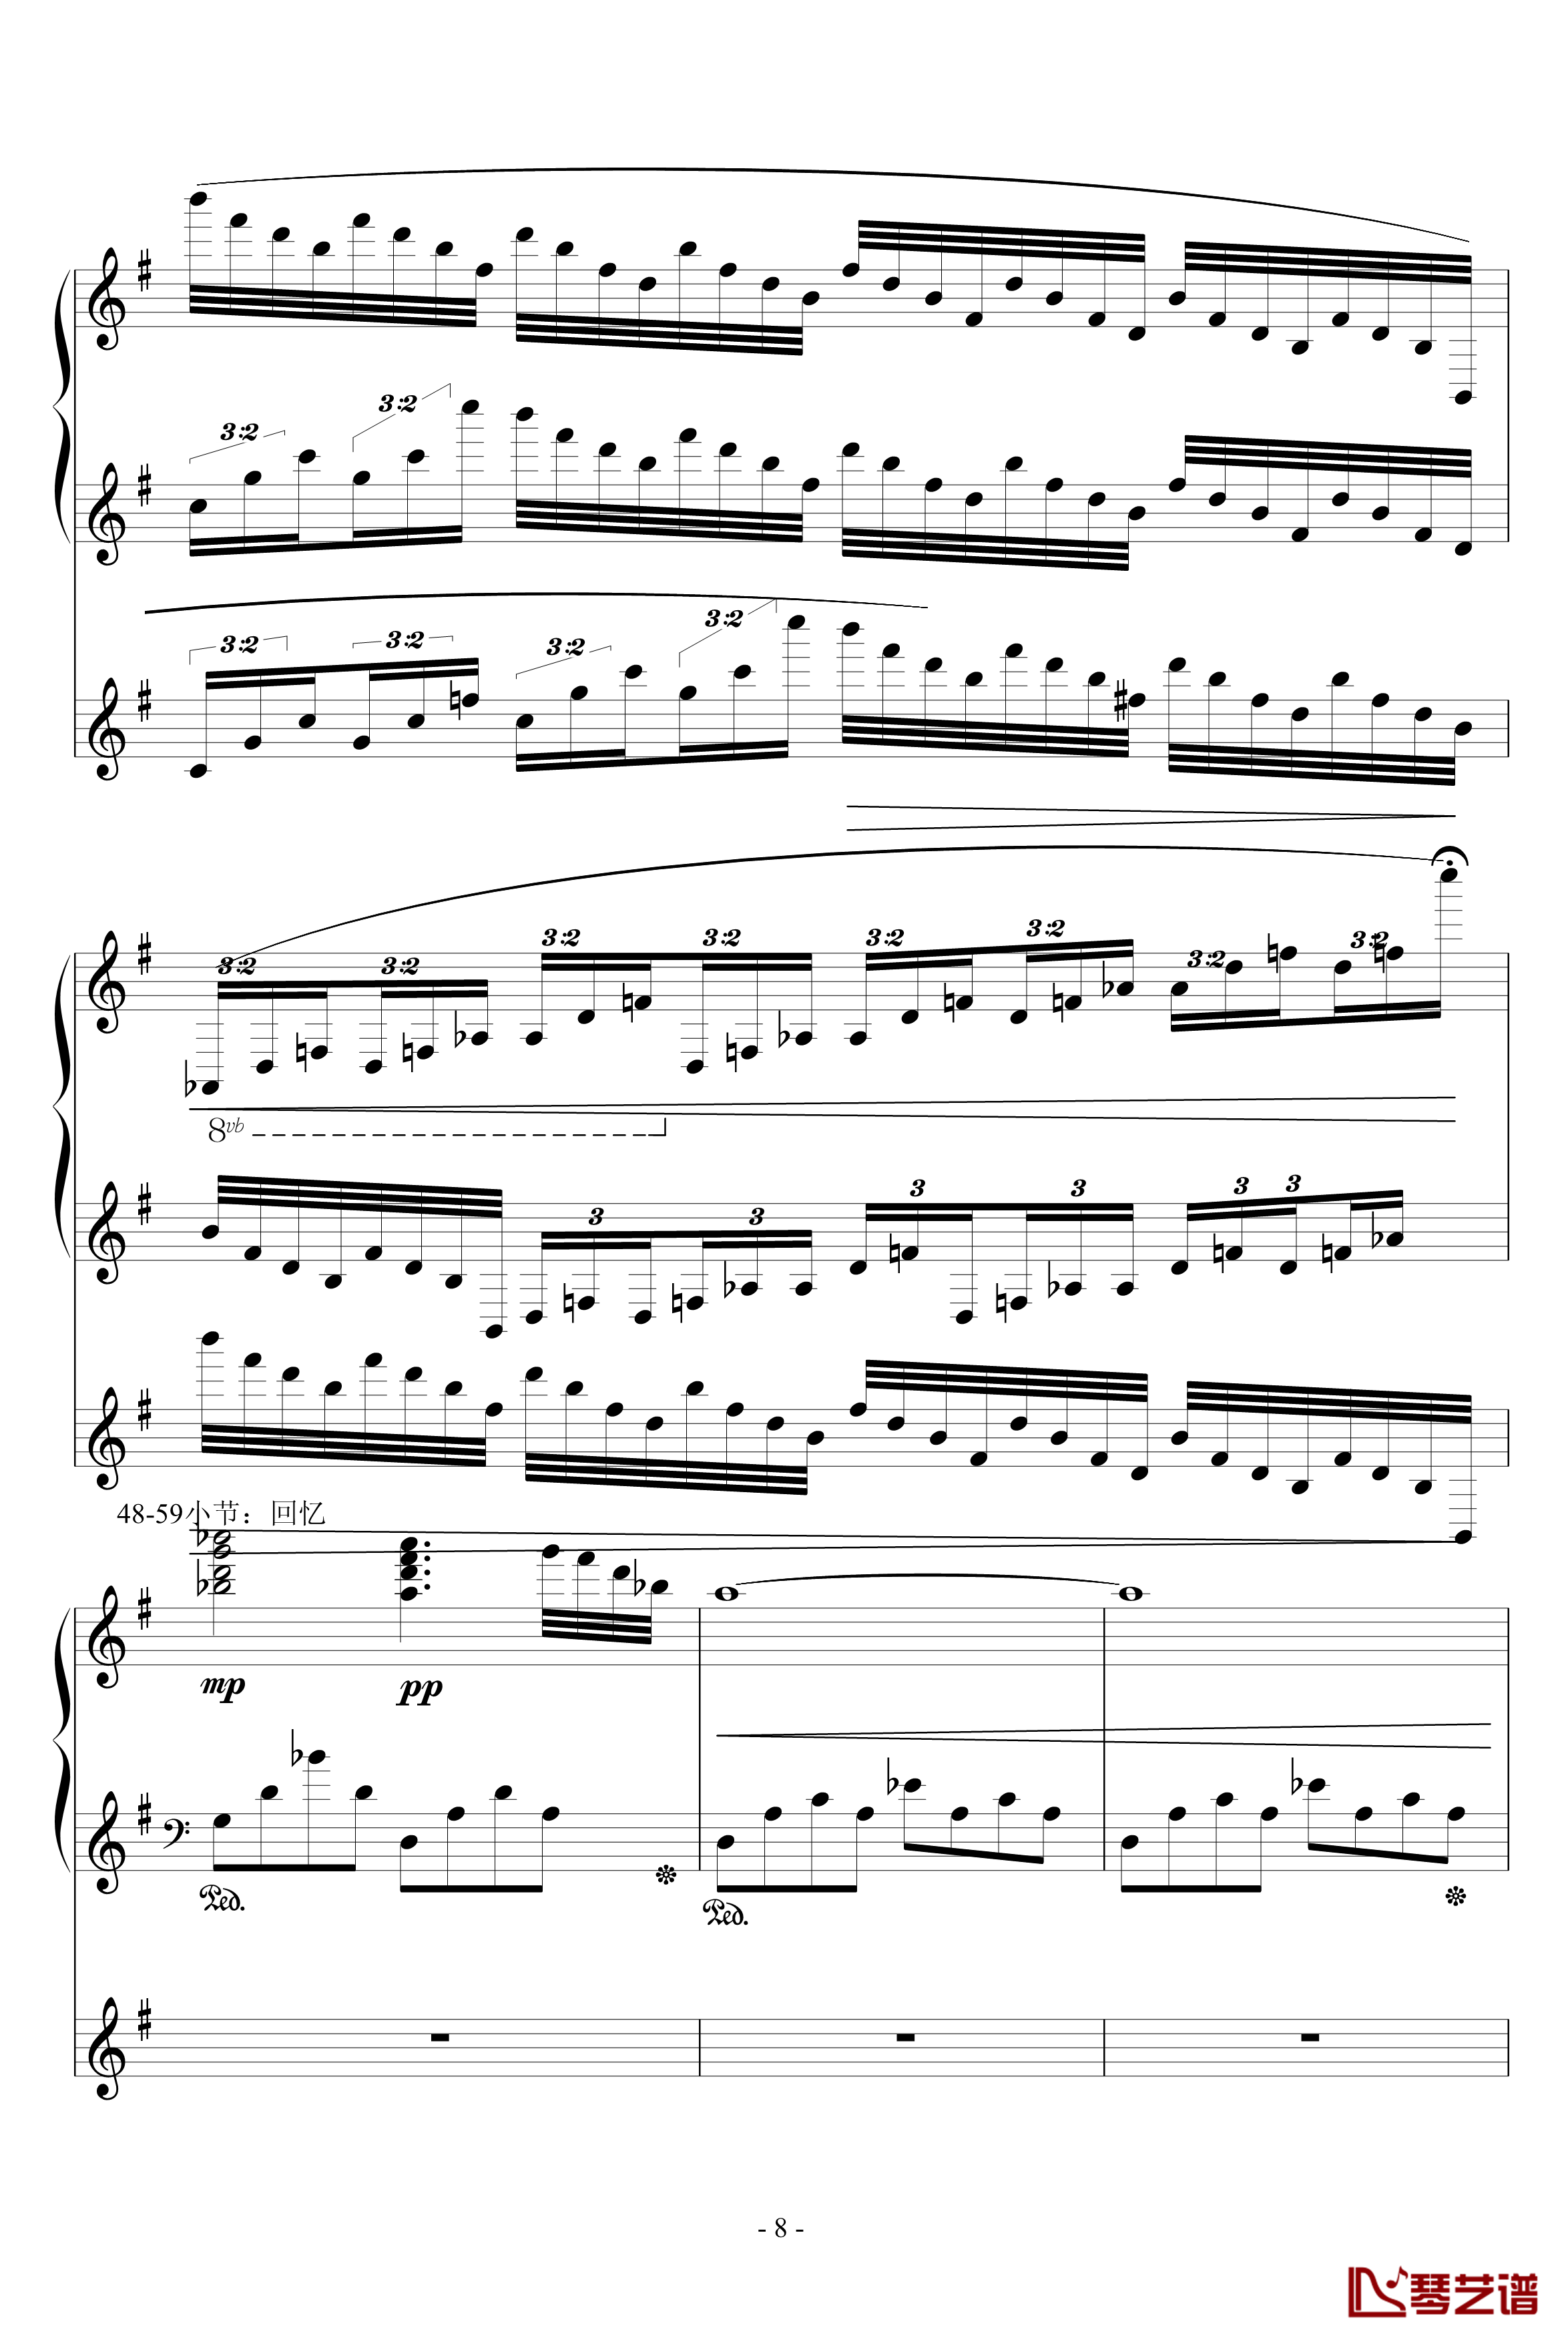 流星小幻想曲钢琴谱-修改-升c小调8